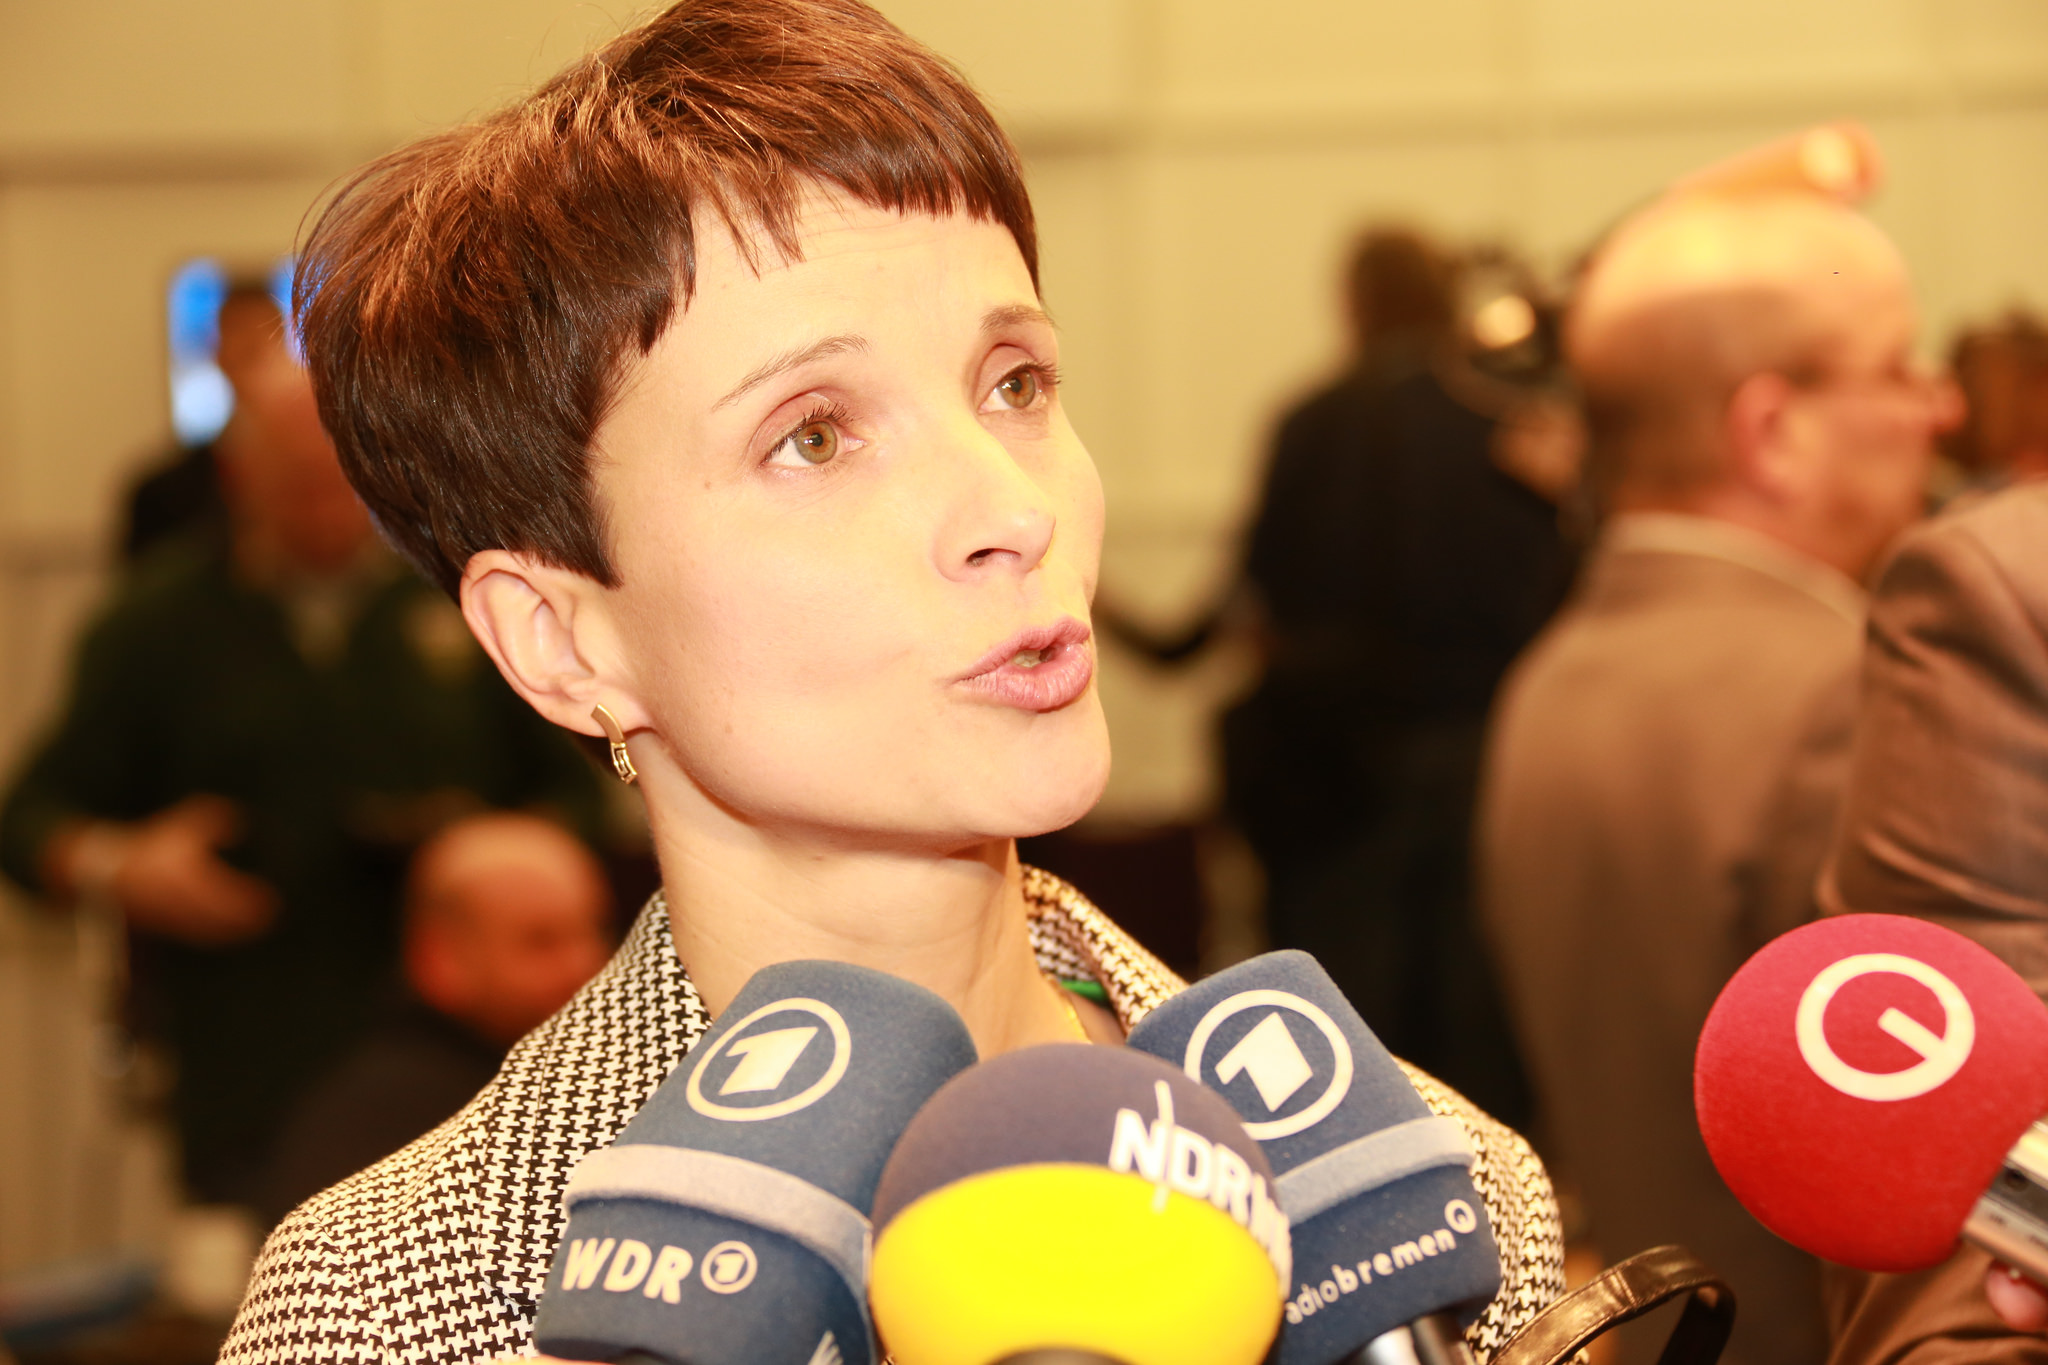 Mehr als jede vierte Aussage falsch oder überwiegend falsch: AfD-Chefin Frauke Petry (Archivfoto). Foto: Metropolico.org / Flickr (CC BY-SA 2.0)